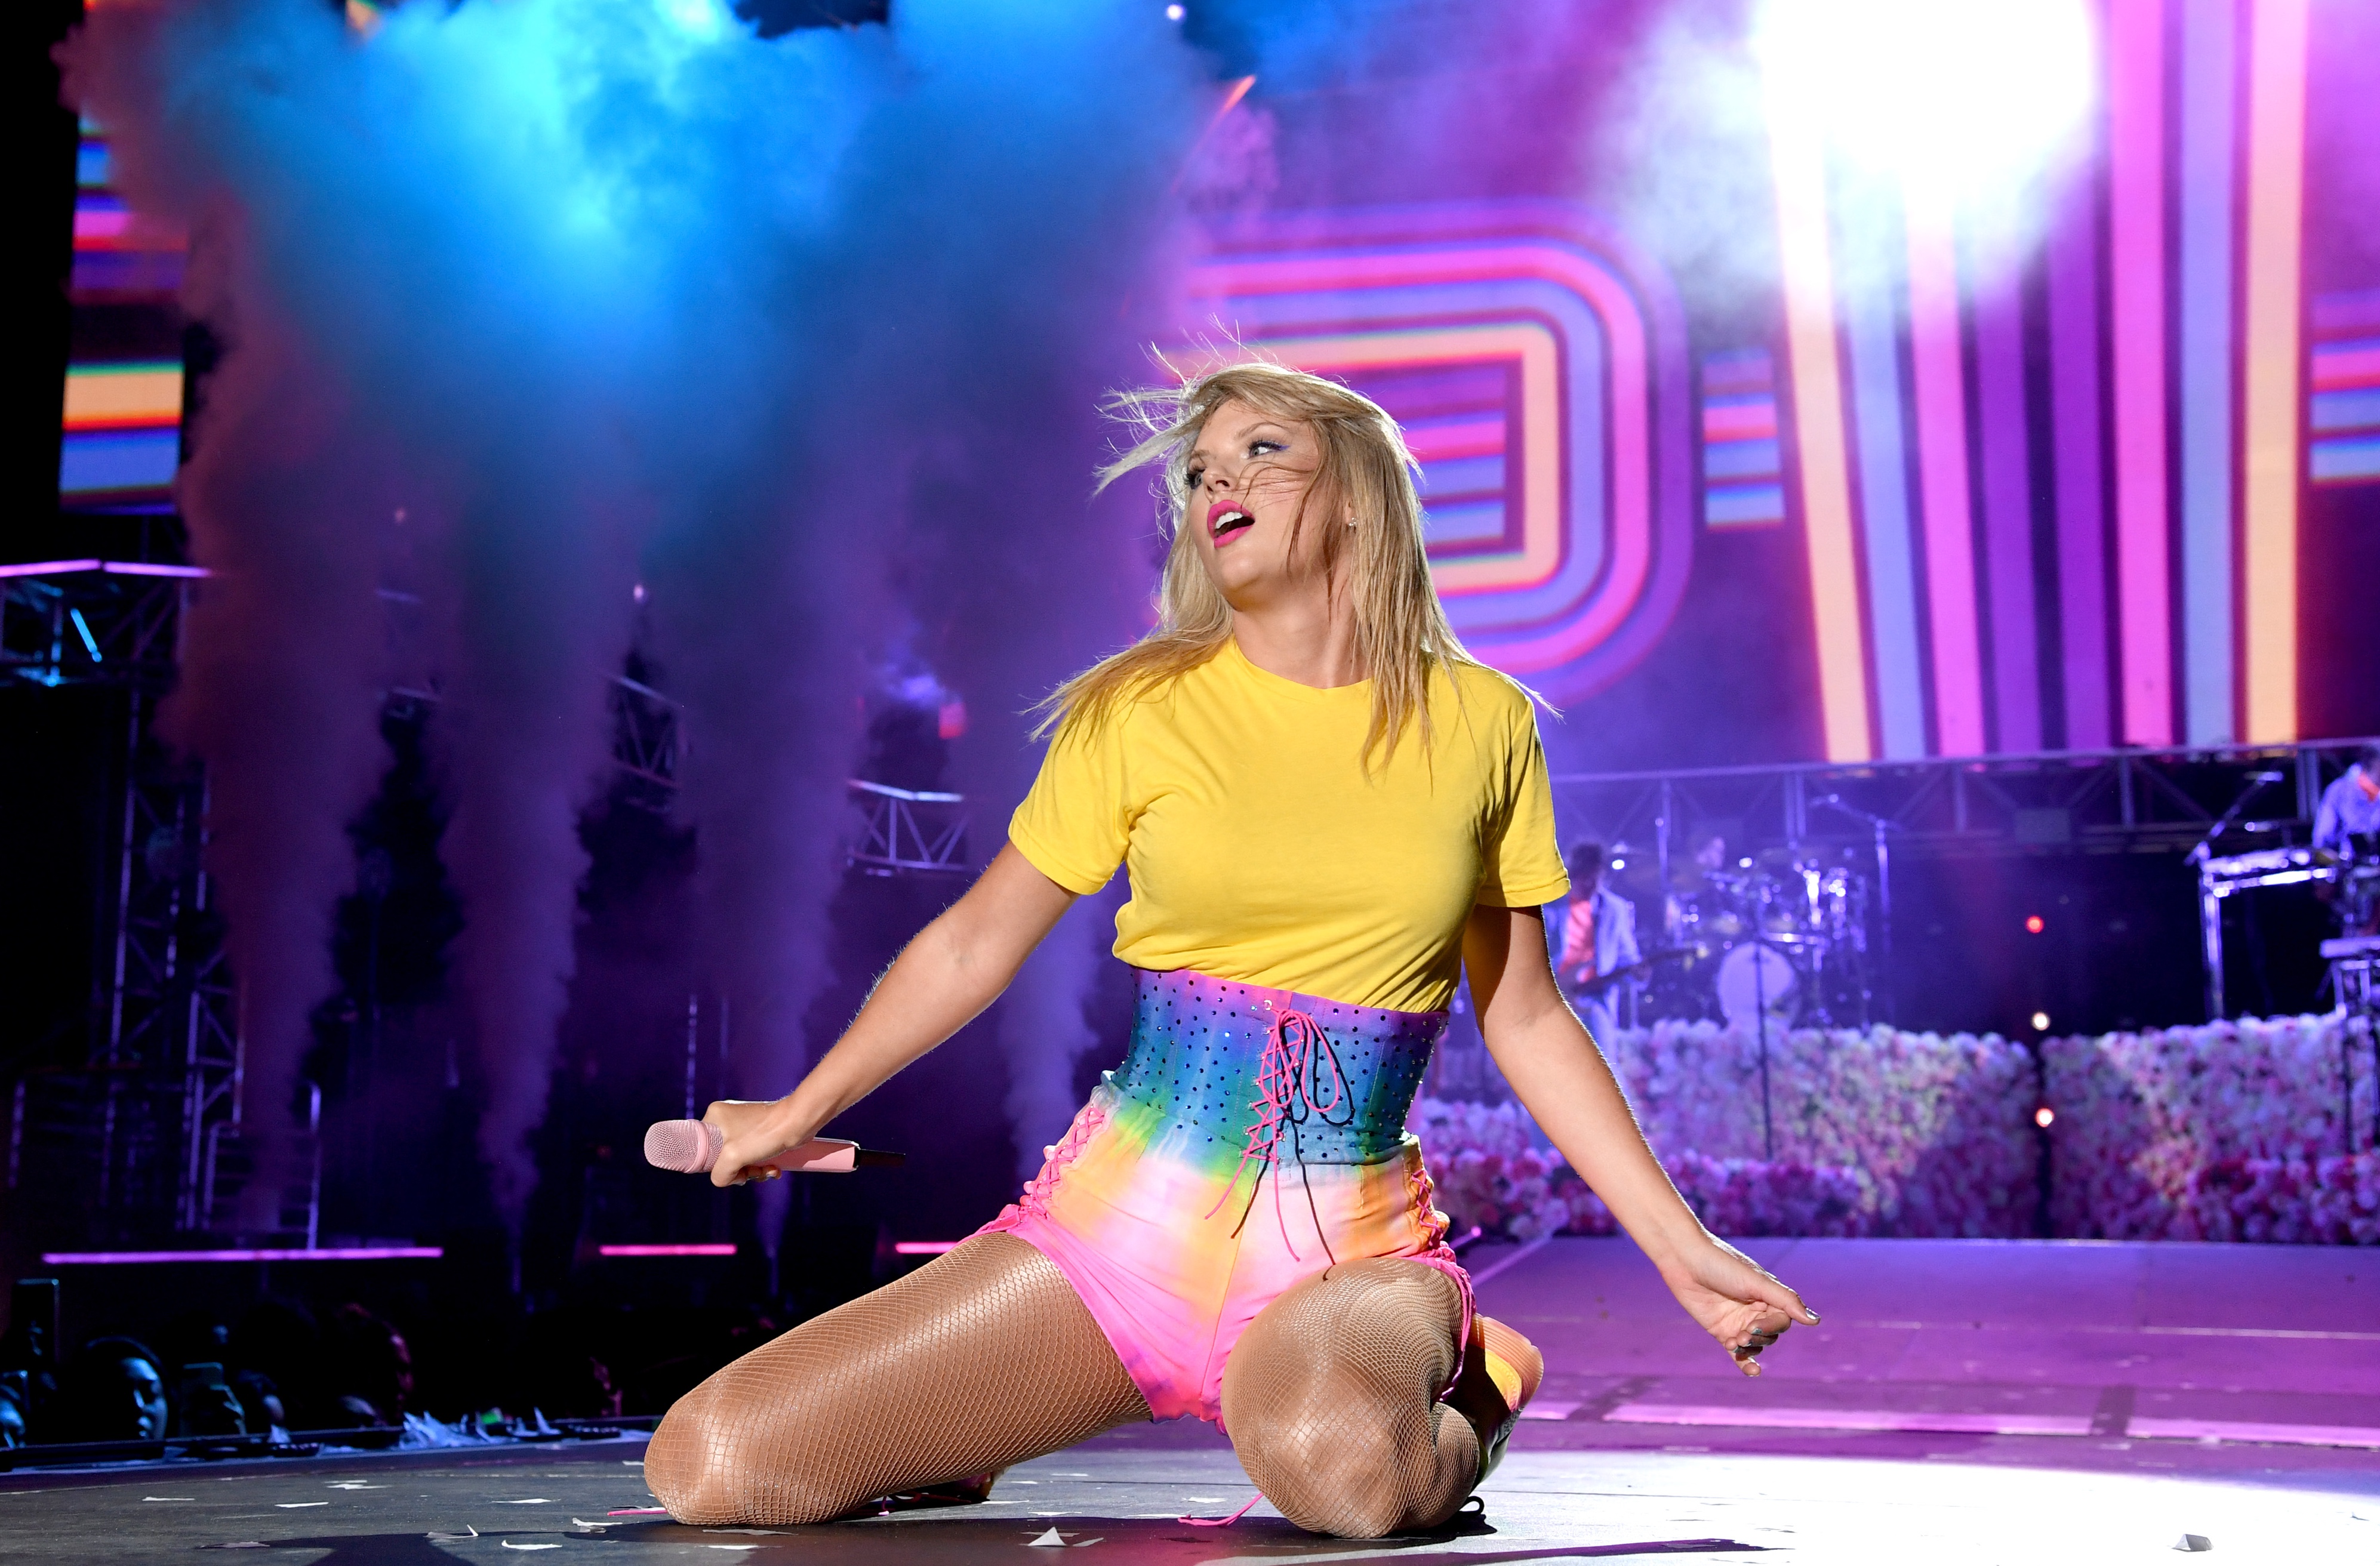 Meldet sich mit reichlich Farbe und einer Menge Energie zurück: Pop-Queen Taylor Swift